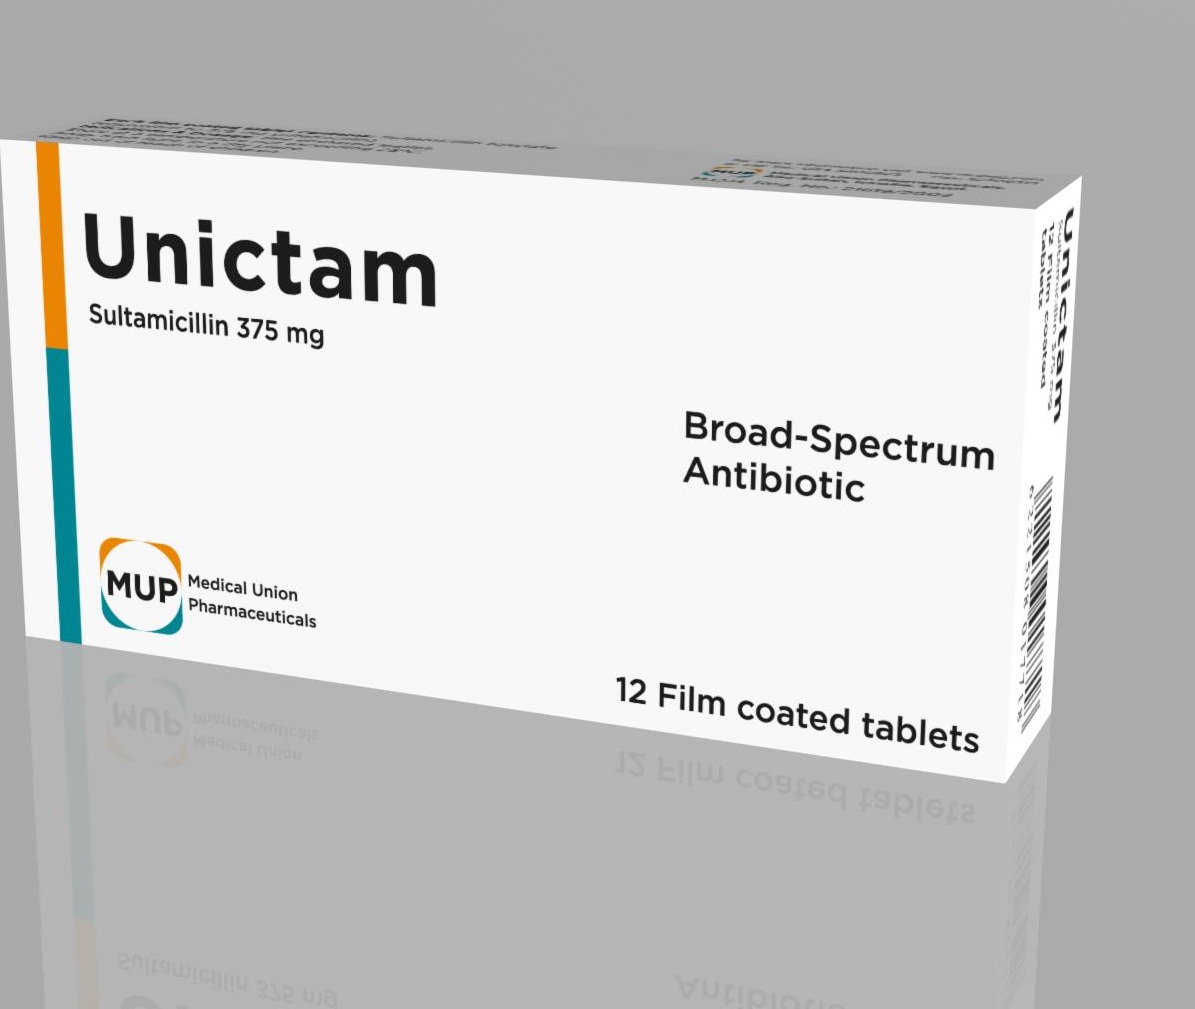 دواء يونيكتام Unictam استخدامات علاج يونيكتام للحامل مضاد حيوي